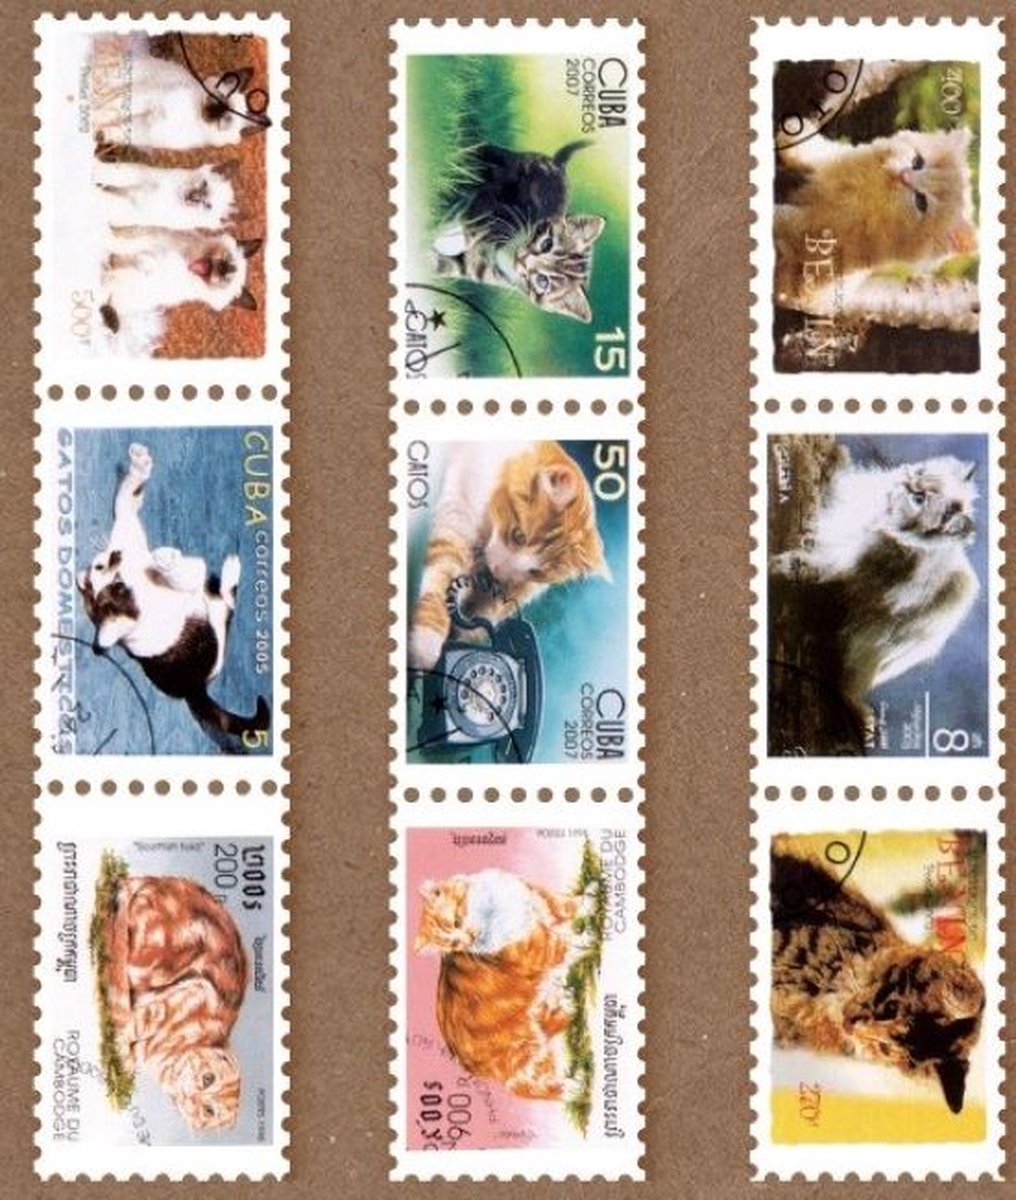 Postzegel Tape - Poezen - Washi tape Katten - Tape in postzegelvorm - Leuk voor oa. Bulletjournal, Scrapbooking, Agendas en Kaarten maken